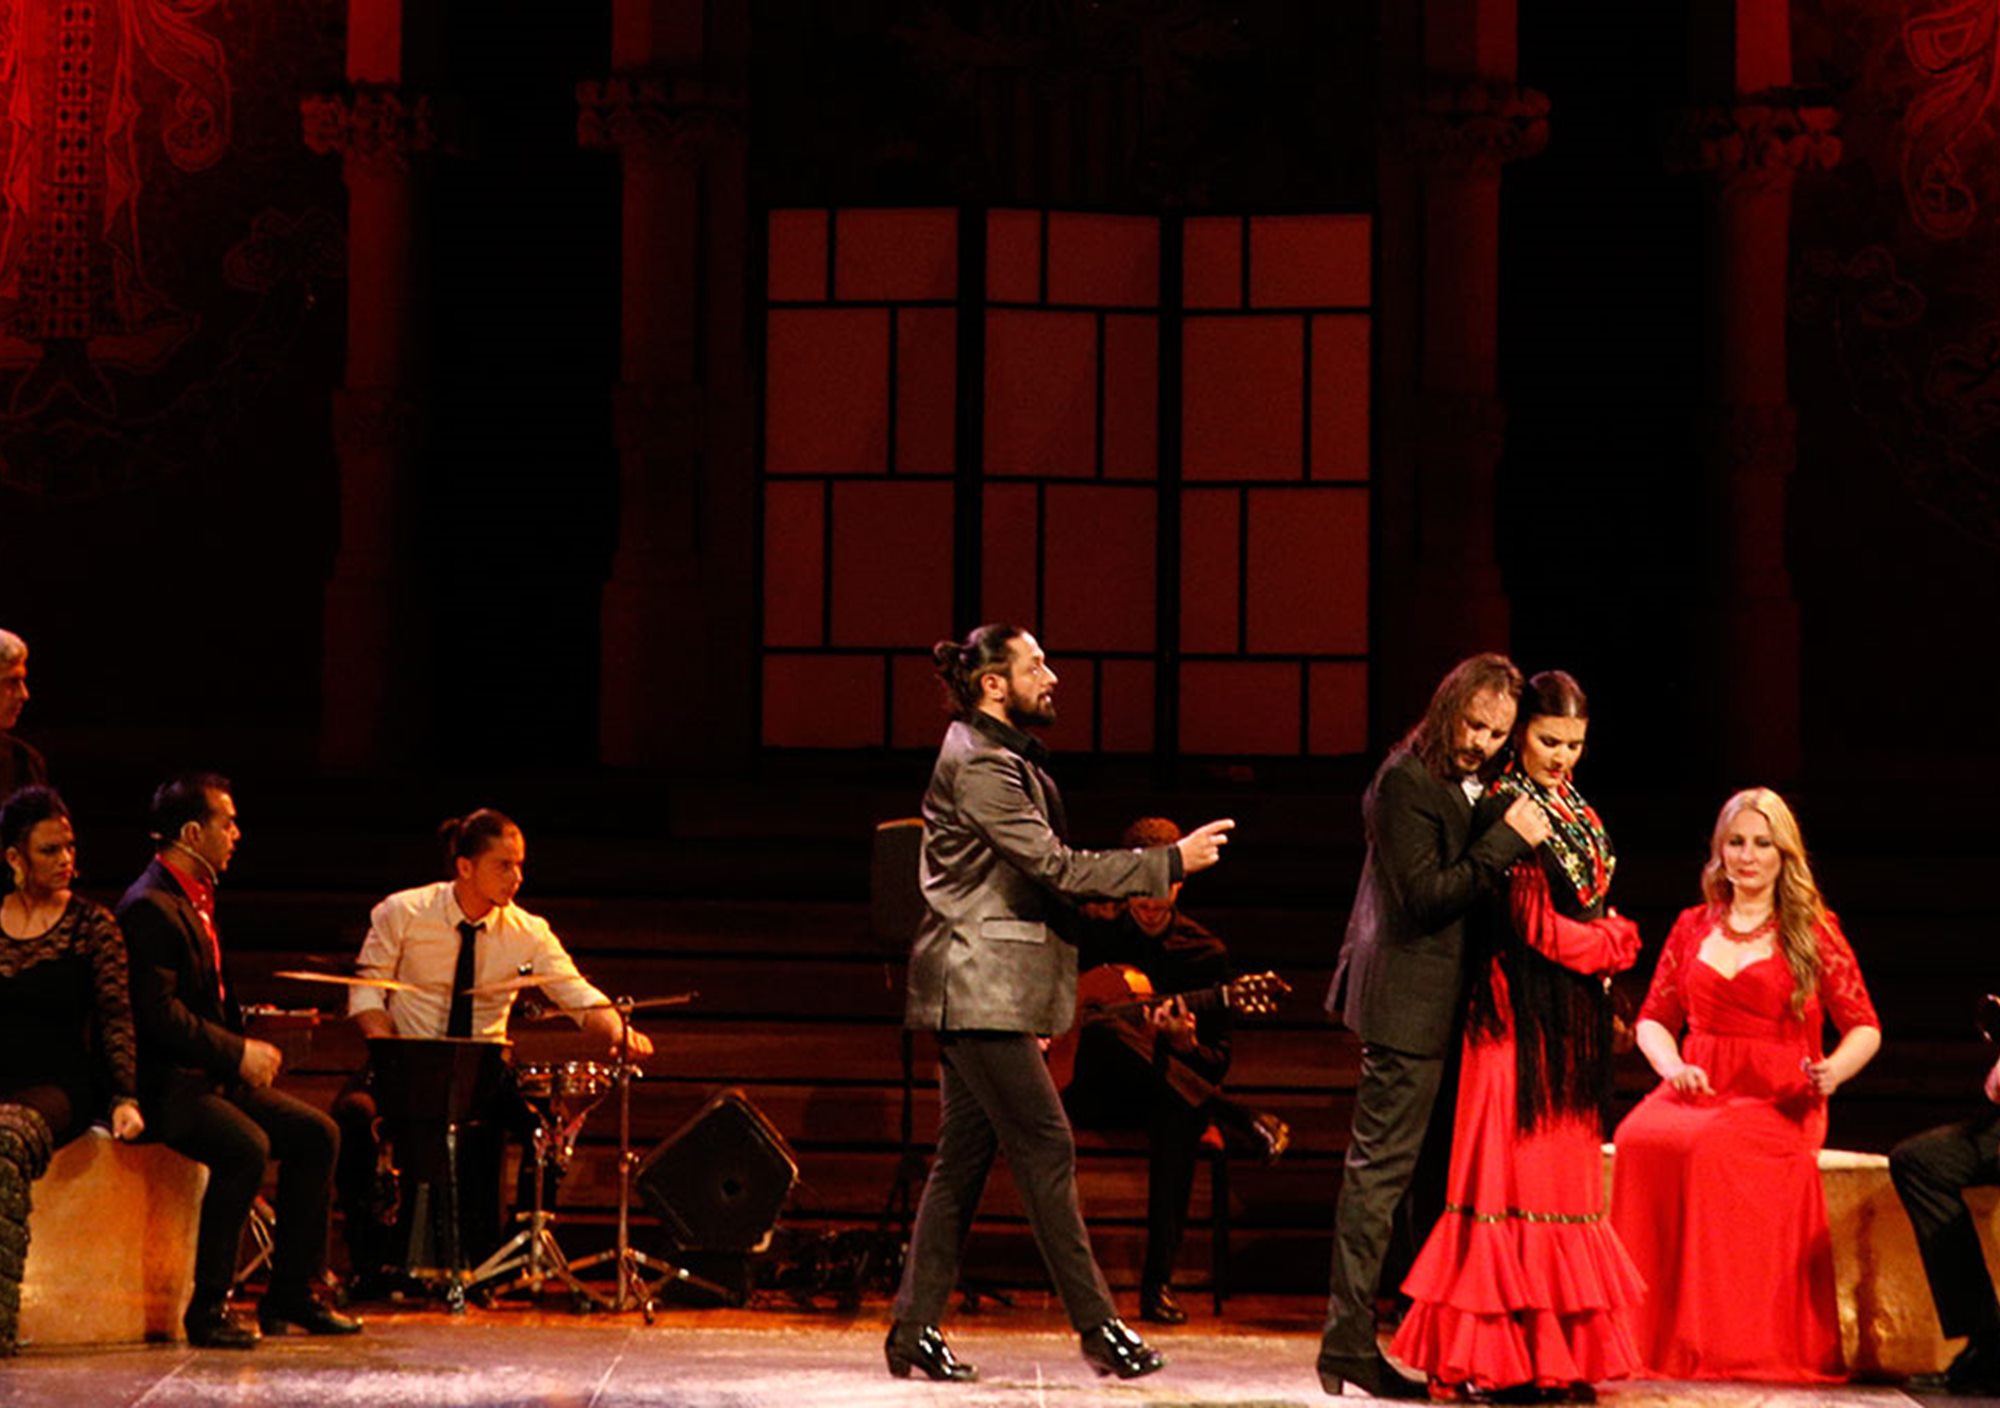 kaufen buchung besucht Touren Fahrkarte karte karten Eintrittskarten Oper Flamenco show in Palau de la Musica barcelona